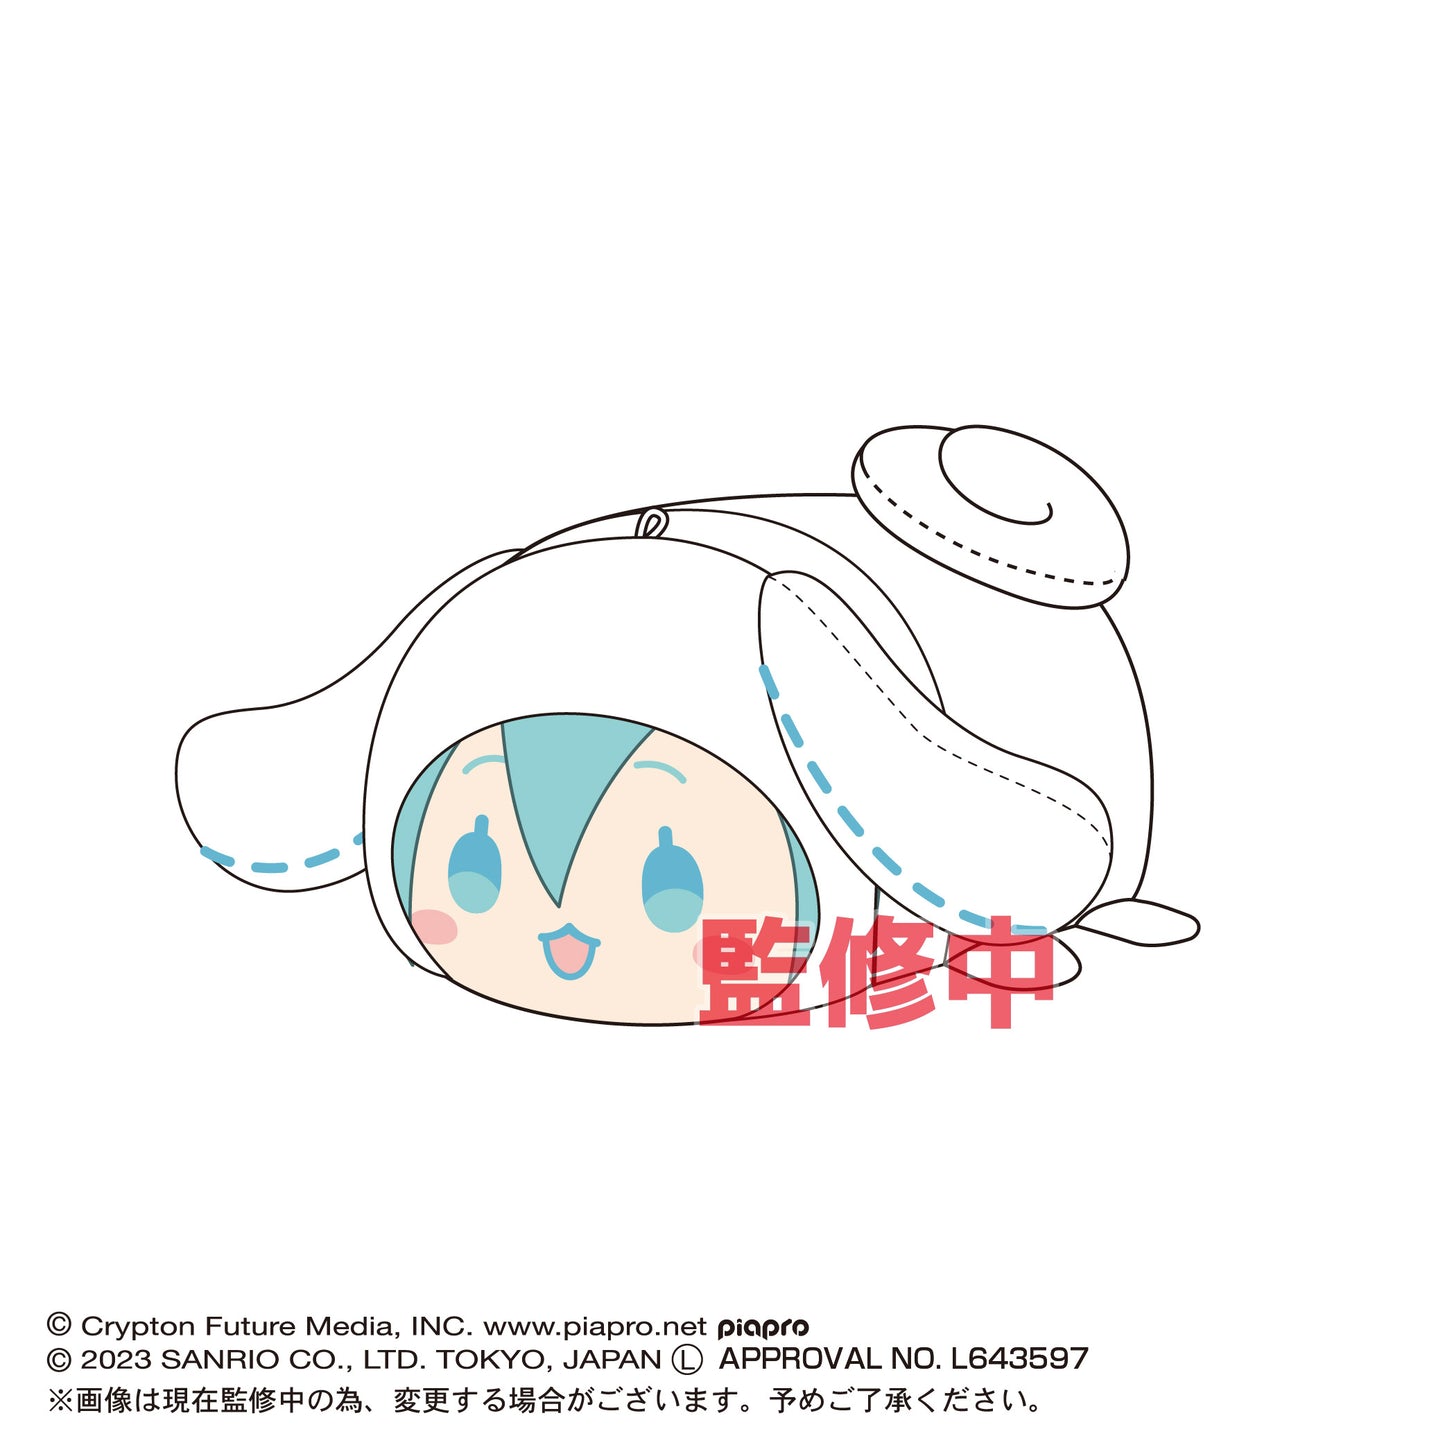 (Pre-Order) MC-03 Hatsune Miku x Cinnamoroll Potekoro Mascot - Small Plush